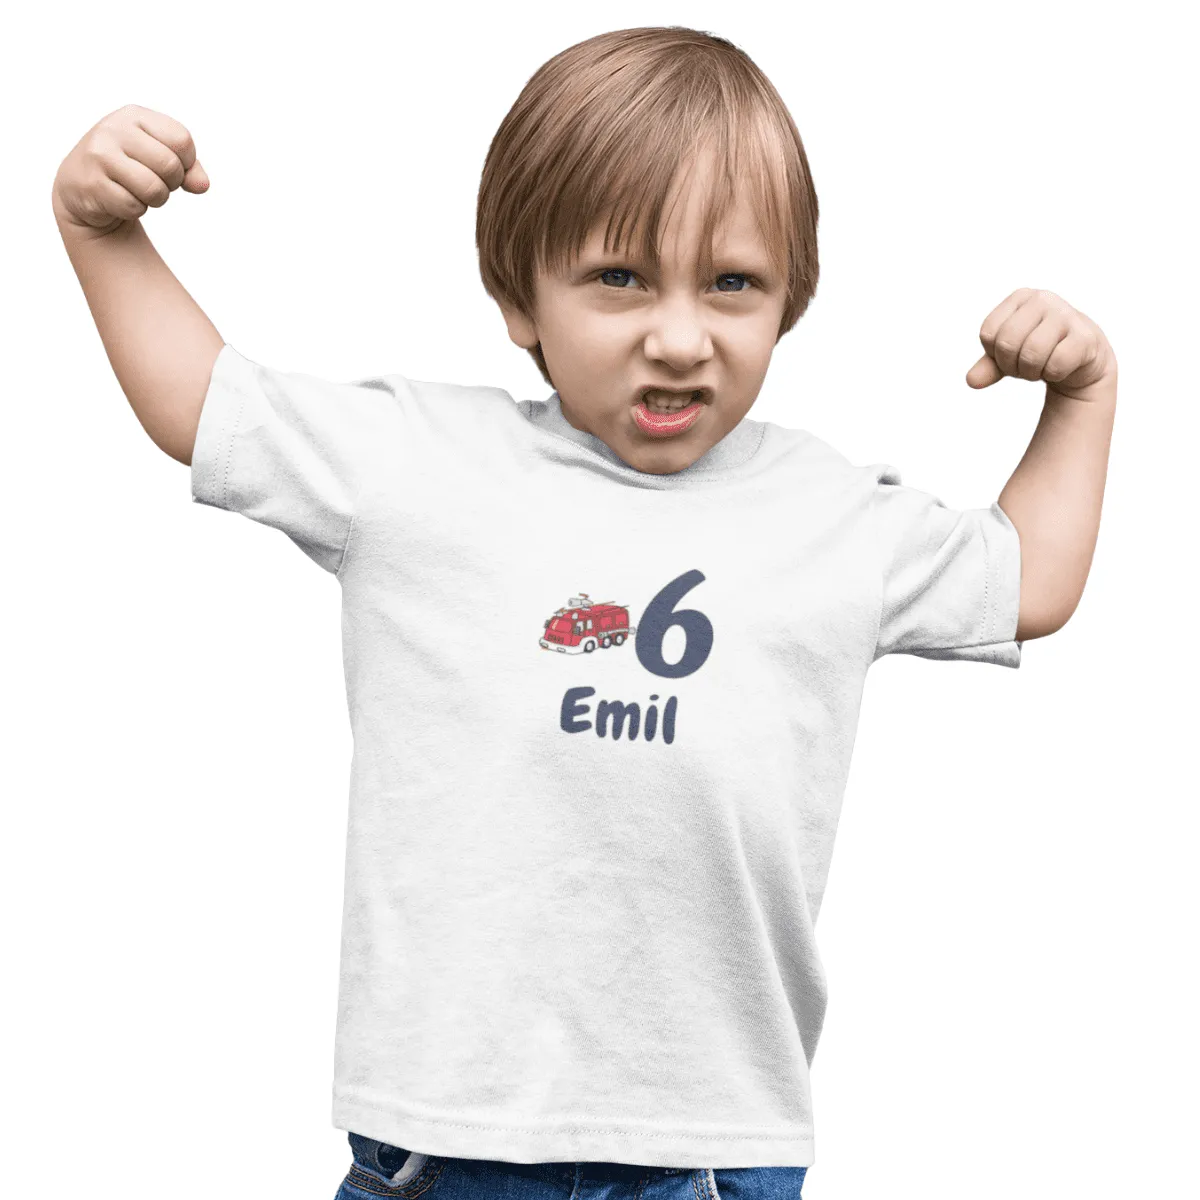 Kinder T-Shirt mit Wunschname und Alter - Design Feuewehr